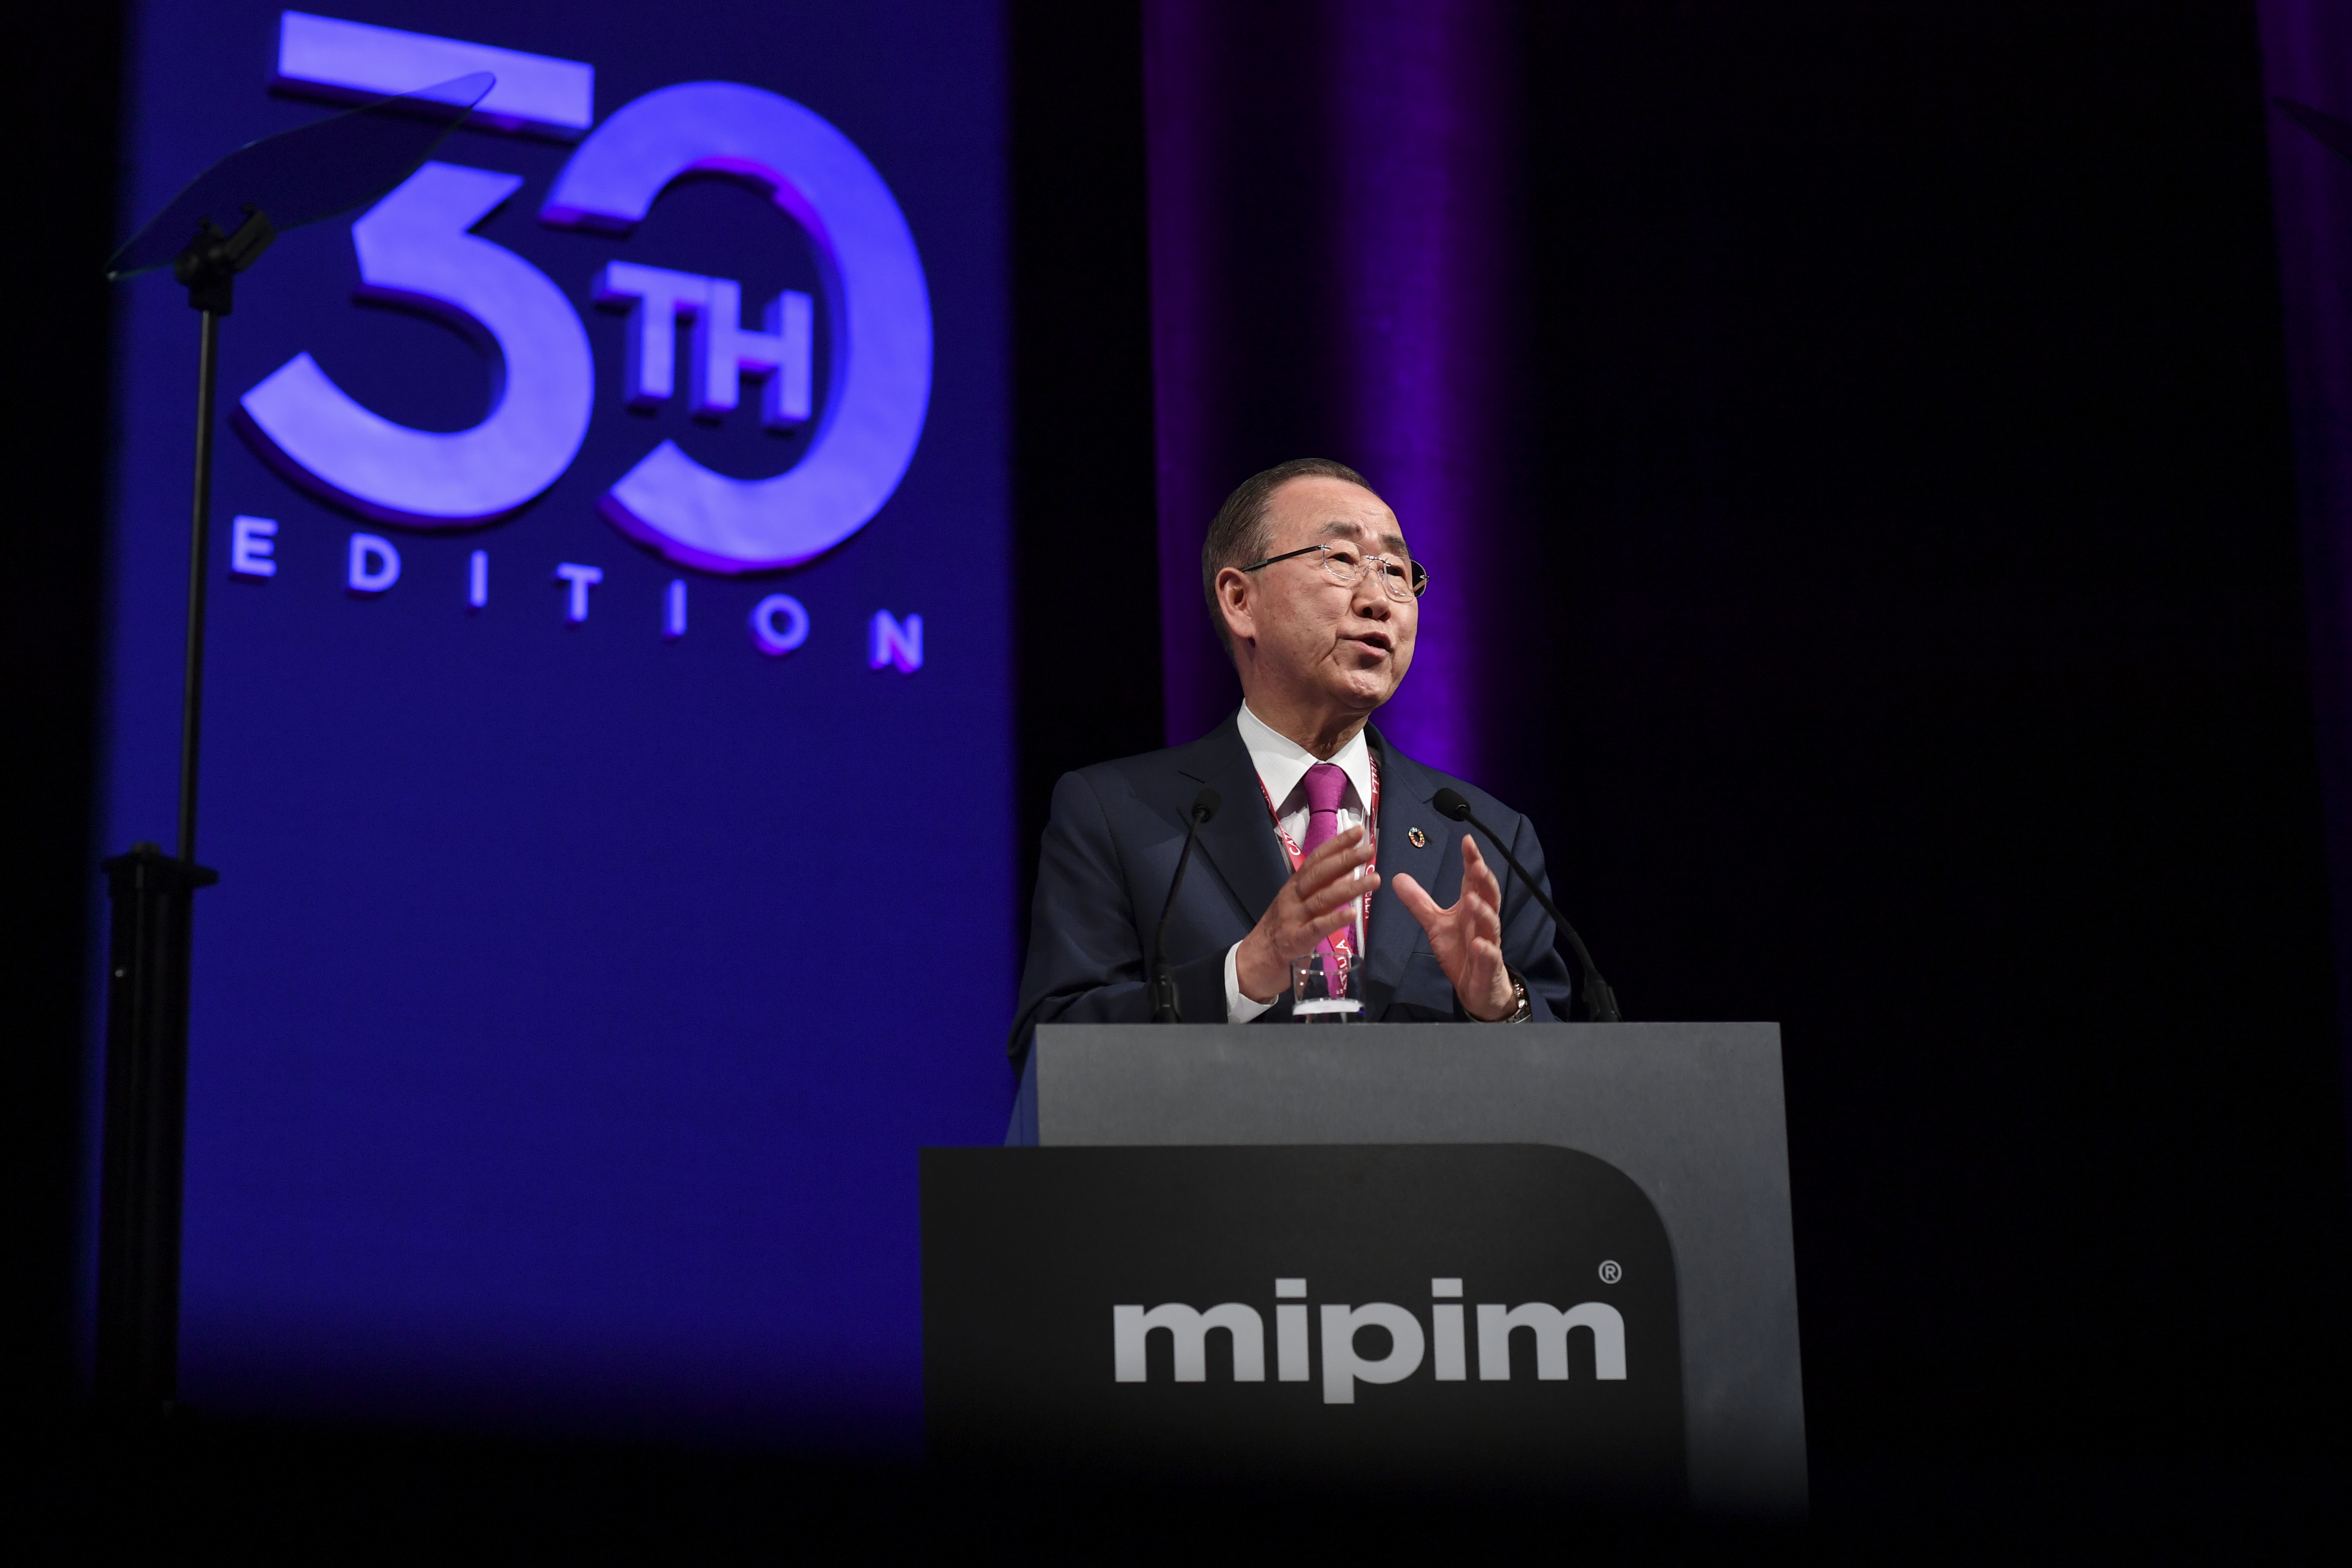 <p>Speaker Spotlight: Ban Ki-moon </p>